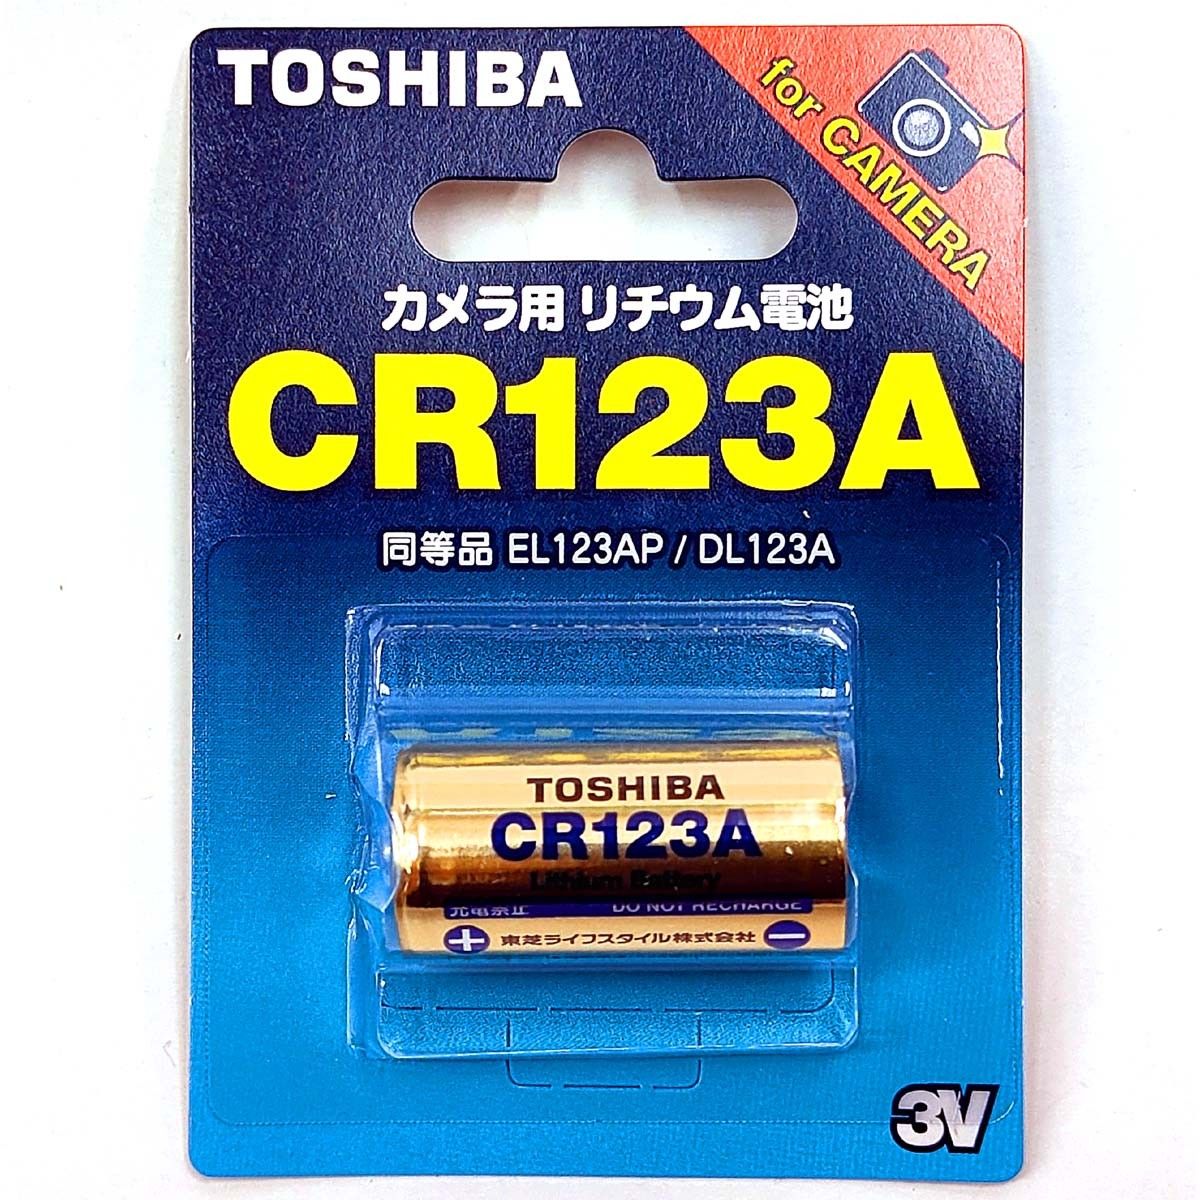 CR123A リチウム電池【1個】3V 東芝 TOSHIBA CR123AG 円筒形電池 EL123AP DL123A 新品